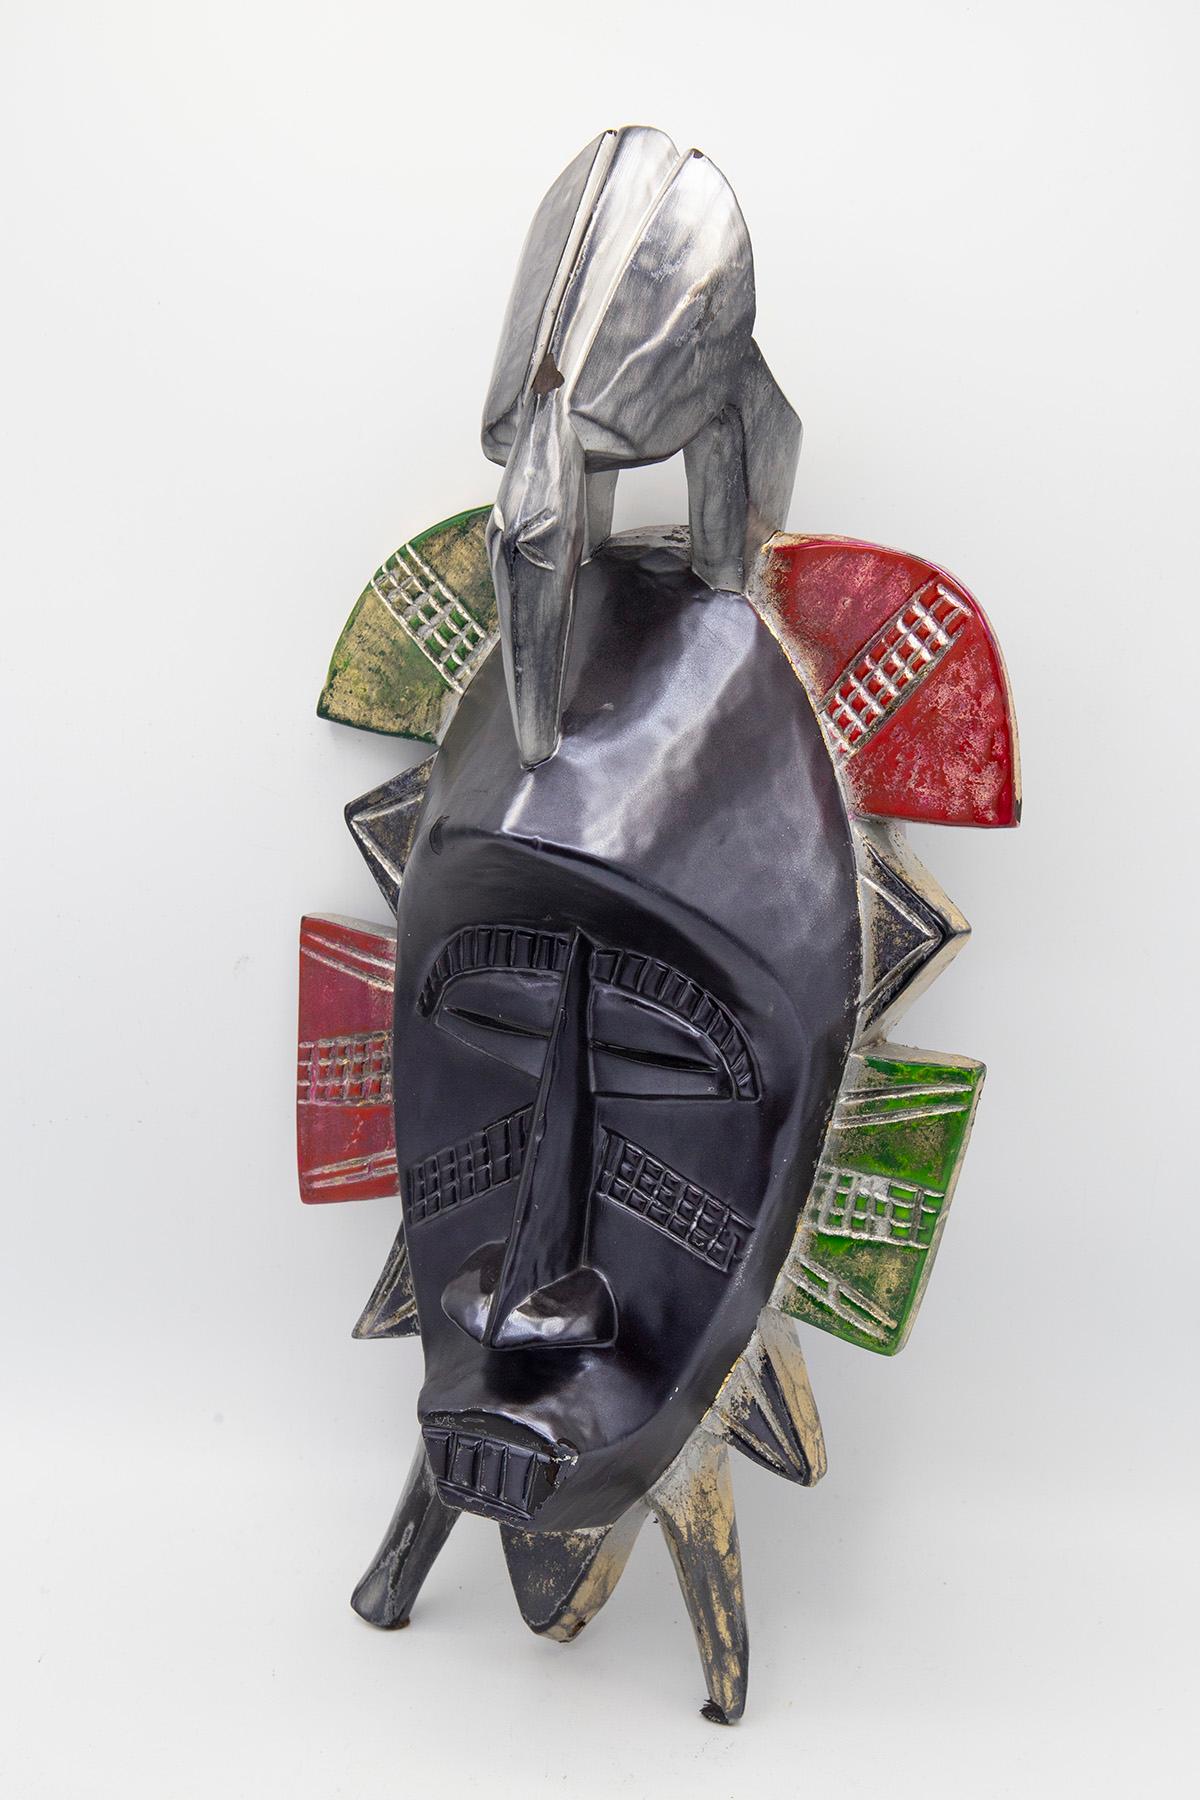 Masque unique africain contemporain créé par l'artiste Bomber Bax.
Le masque date du début des années 1900 et a ensuite été traité et peint fin 2022 par l'artiste.
L'artiste a utilisé des peintures métalliques spéciales pour évoquer un effet lunaire